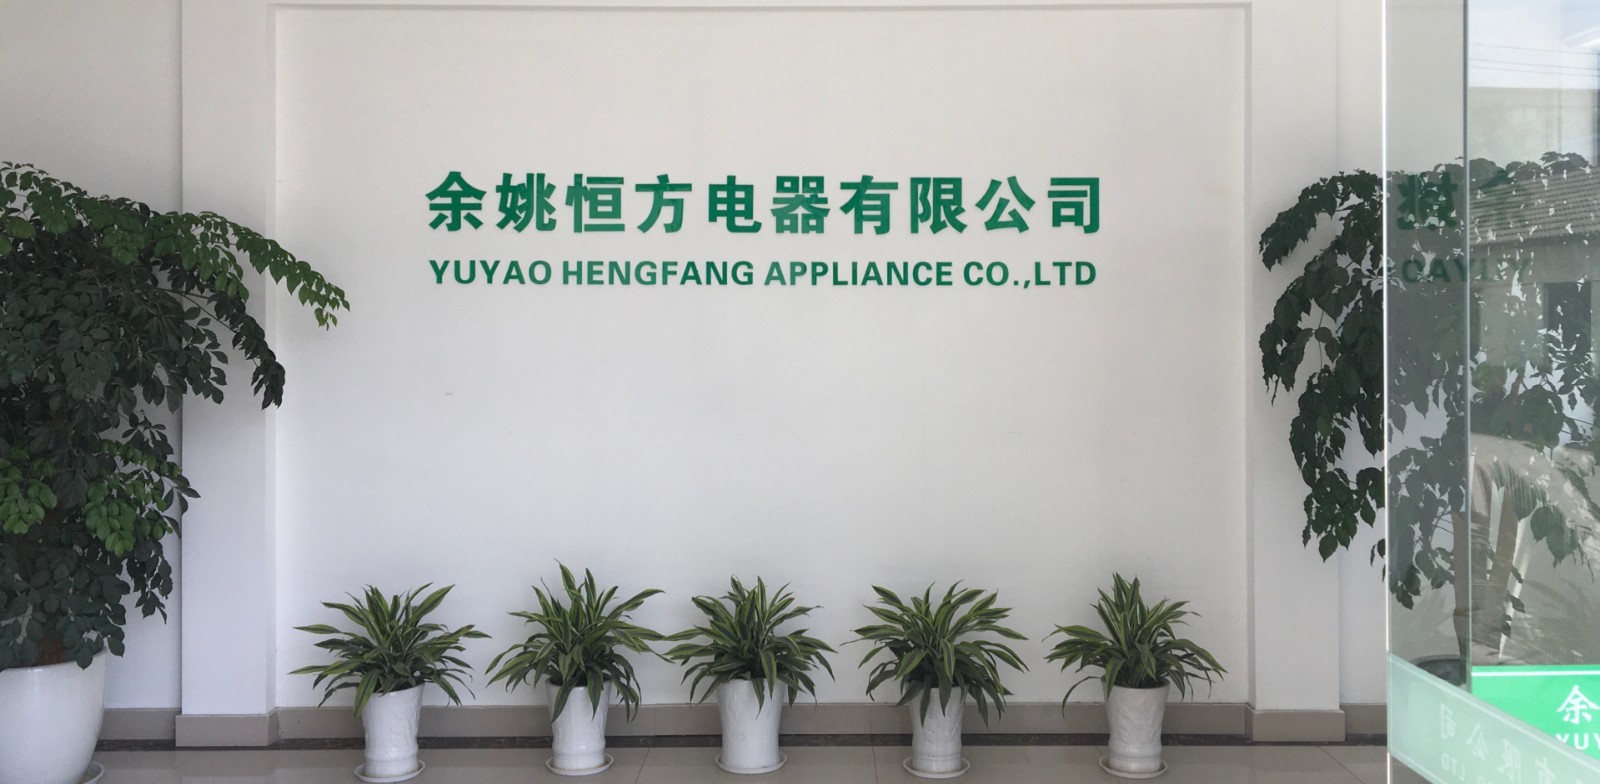 YUYAO HENG FANG APPLIANCE CO.,LTD